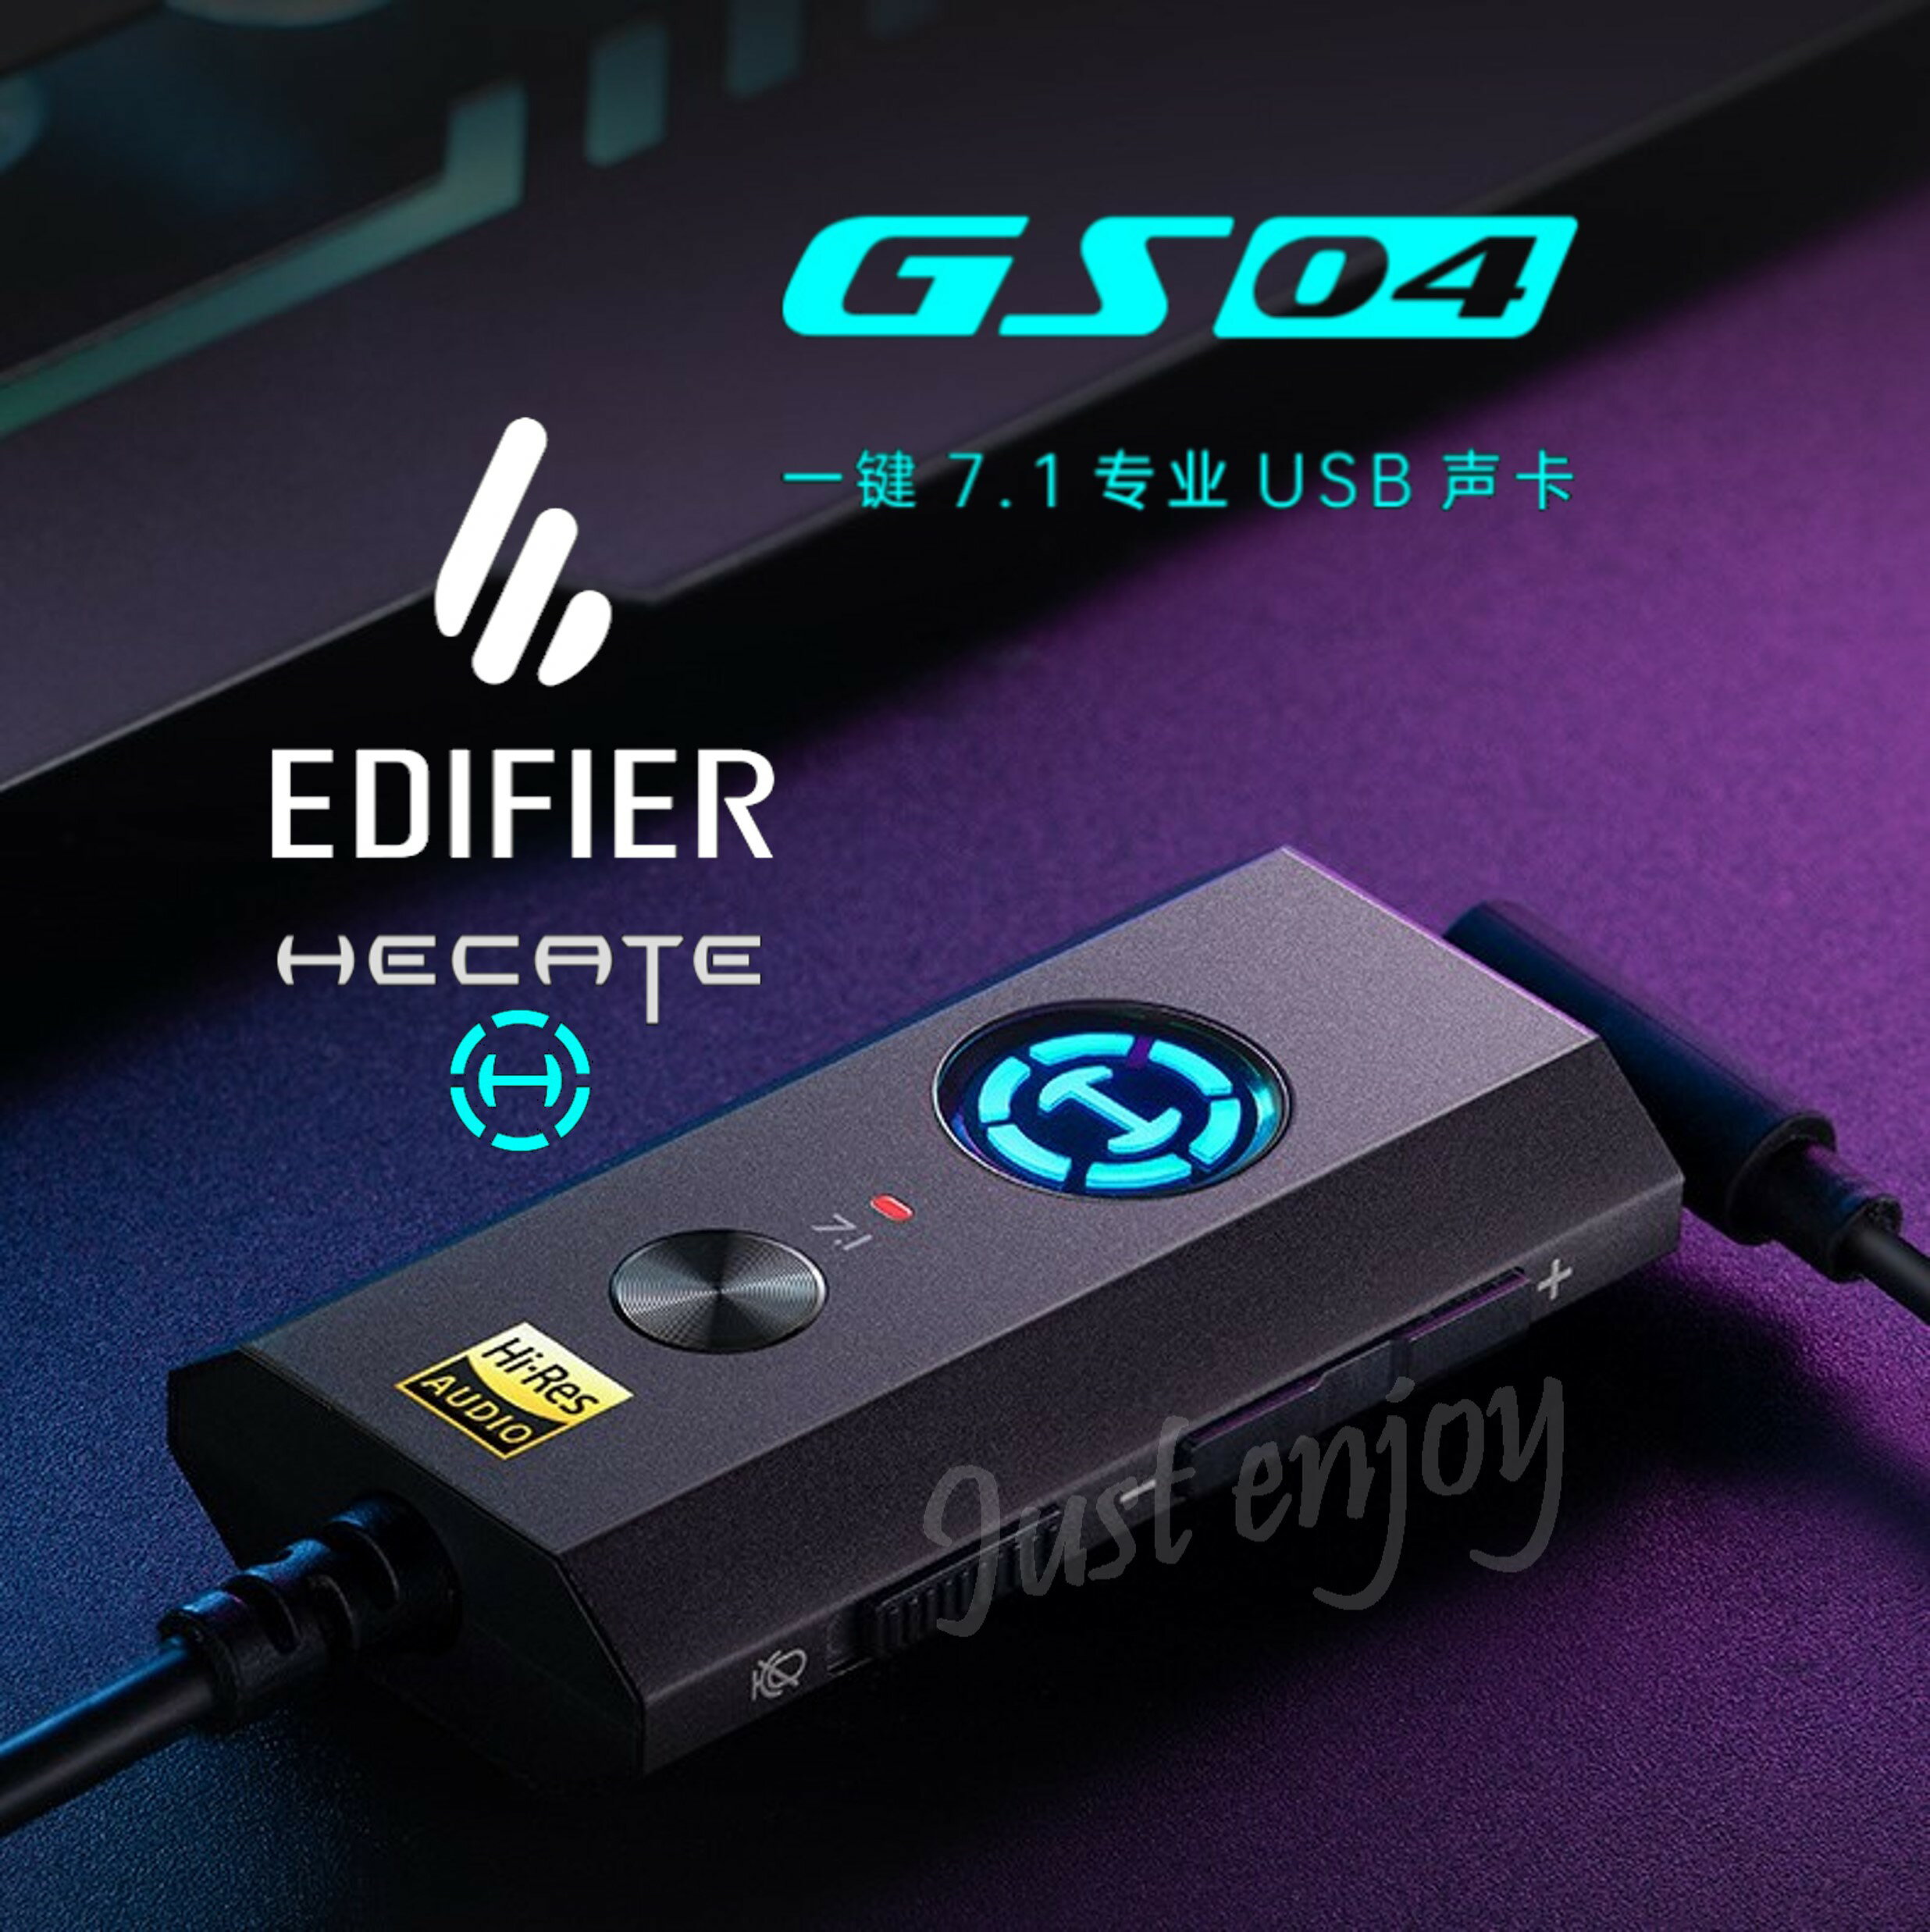 台灣現貨🔥EDIFIER 漫步者 HECATE電競系列 GS04 聲卡 Hi-Res 7.1環繞音效 鋁合金 RGB